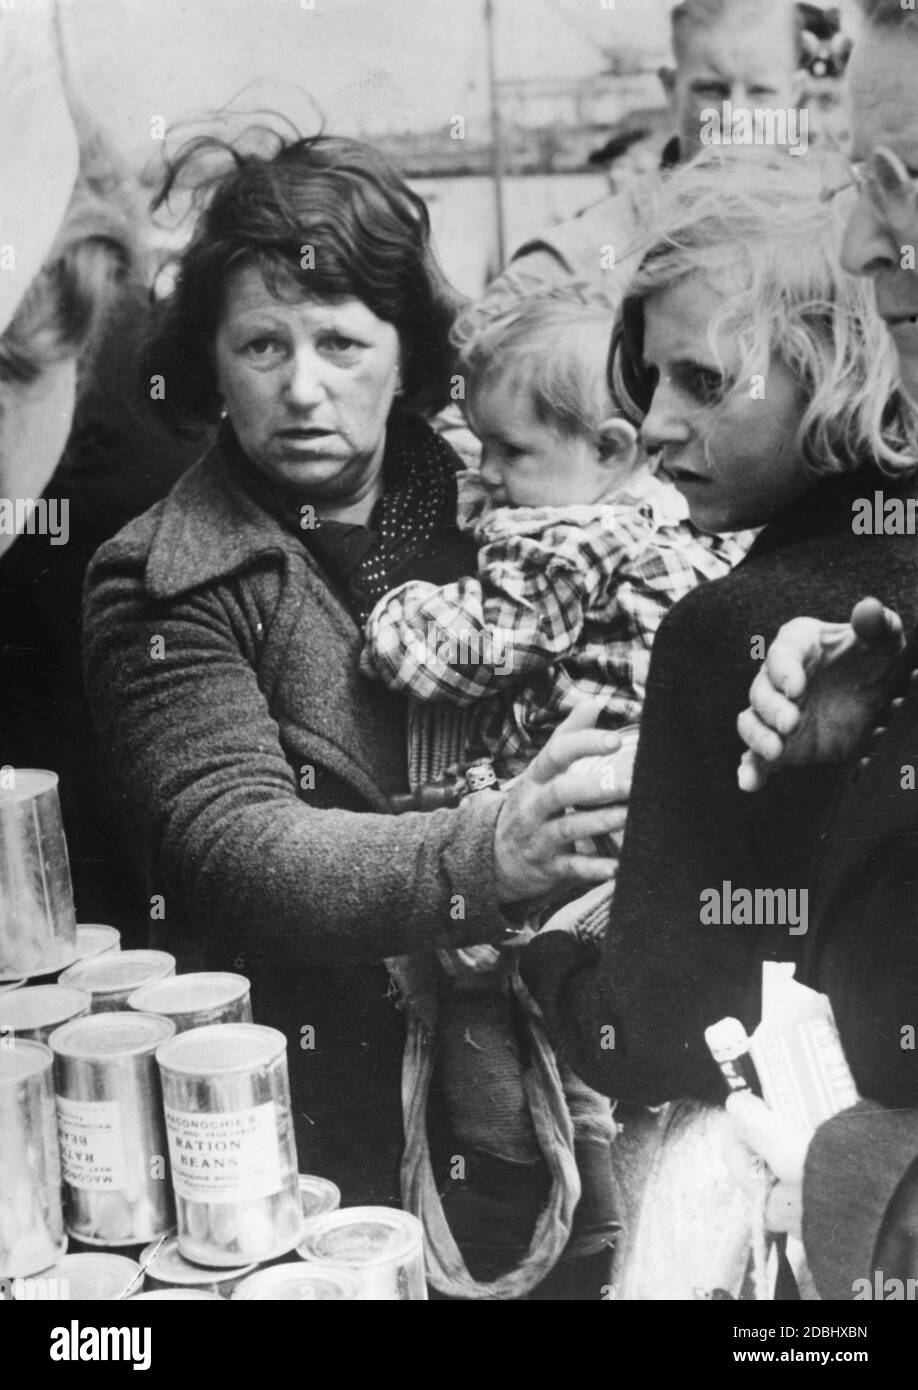 Nella città francese di le Havre, i rifugiati vengono riforniti di cibo catturato dall'Organizzazione Nazionale Socialista del benessere popolare. Qui una madre con il suo bambino. Foto Stock